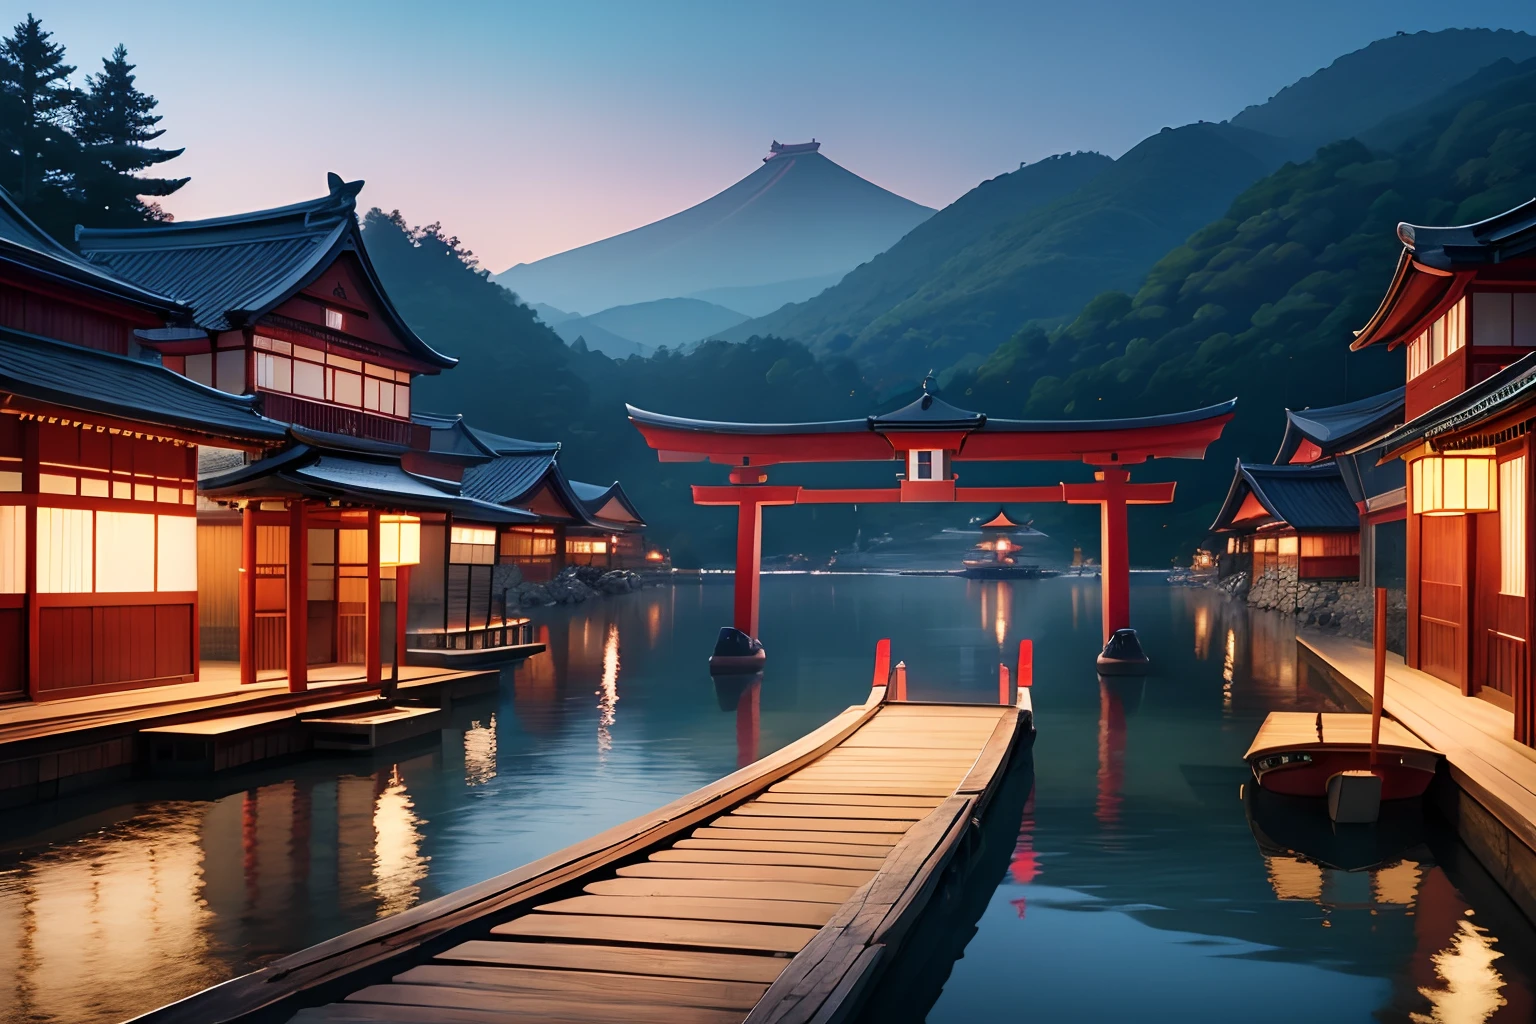 schwimmende Stadt auf dem Wasser, mittelalterliches Japan, torii gate, Landschaft, Panorama, 8K, ausführlich, Top Qualität